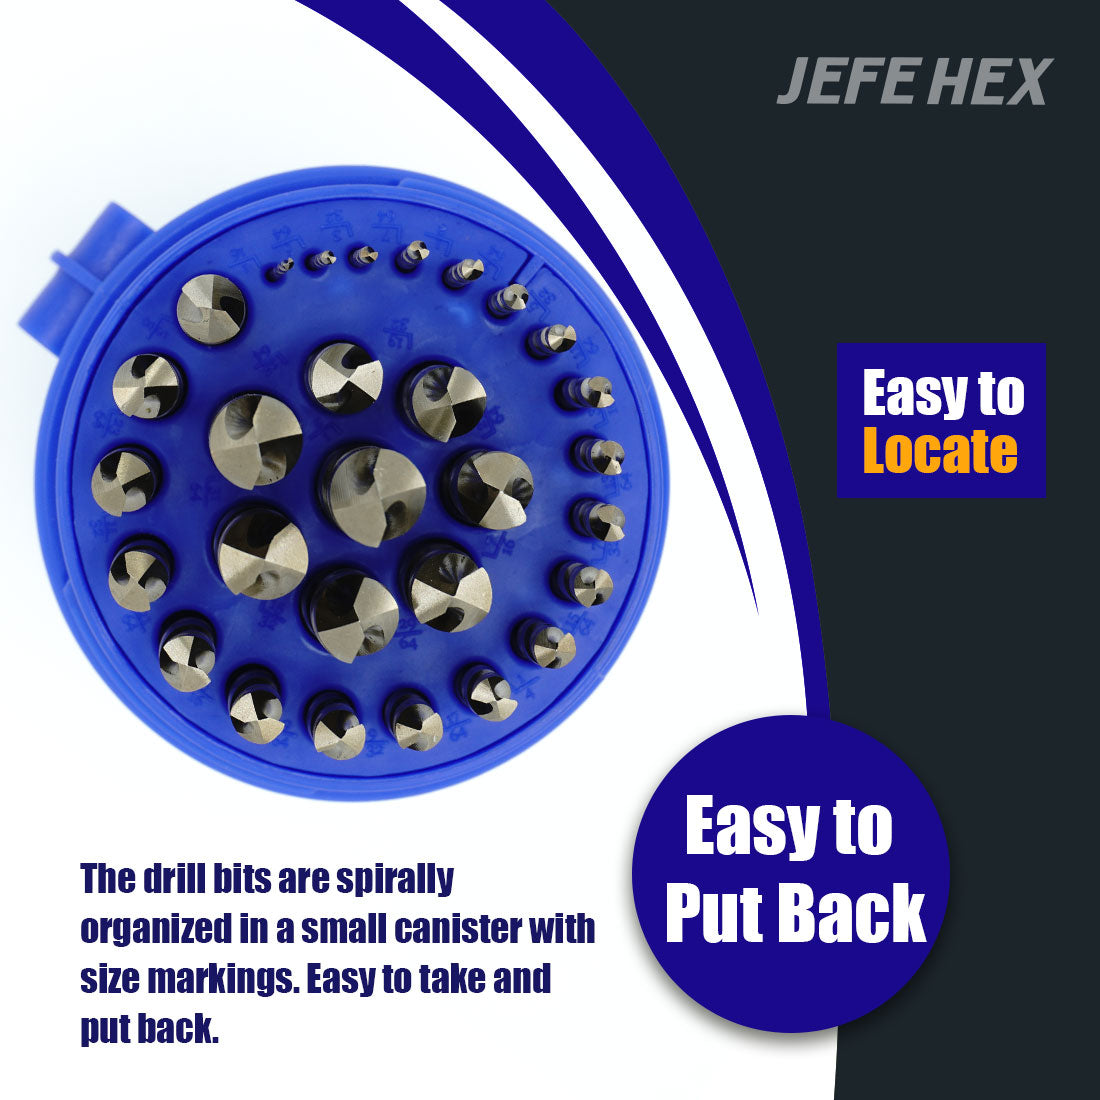 JEFE HEX 29 PCS M35 Cobalt Drill Bit Set, HSS Twist Jobber Drill Bits with 135 Degrees Split Point and Three-Flat Shank(1/16” - 1/2” x 1/64”)